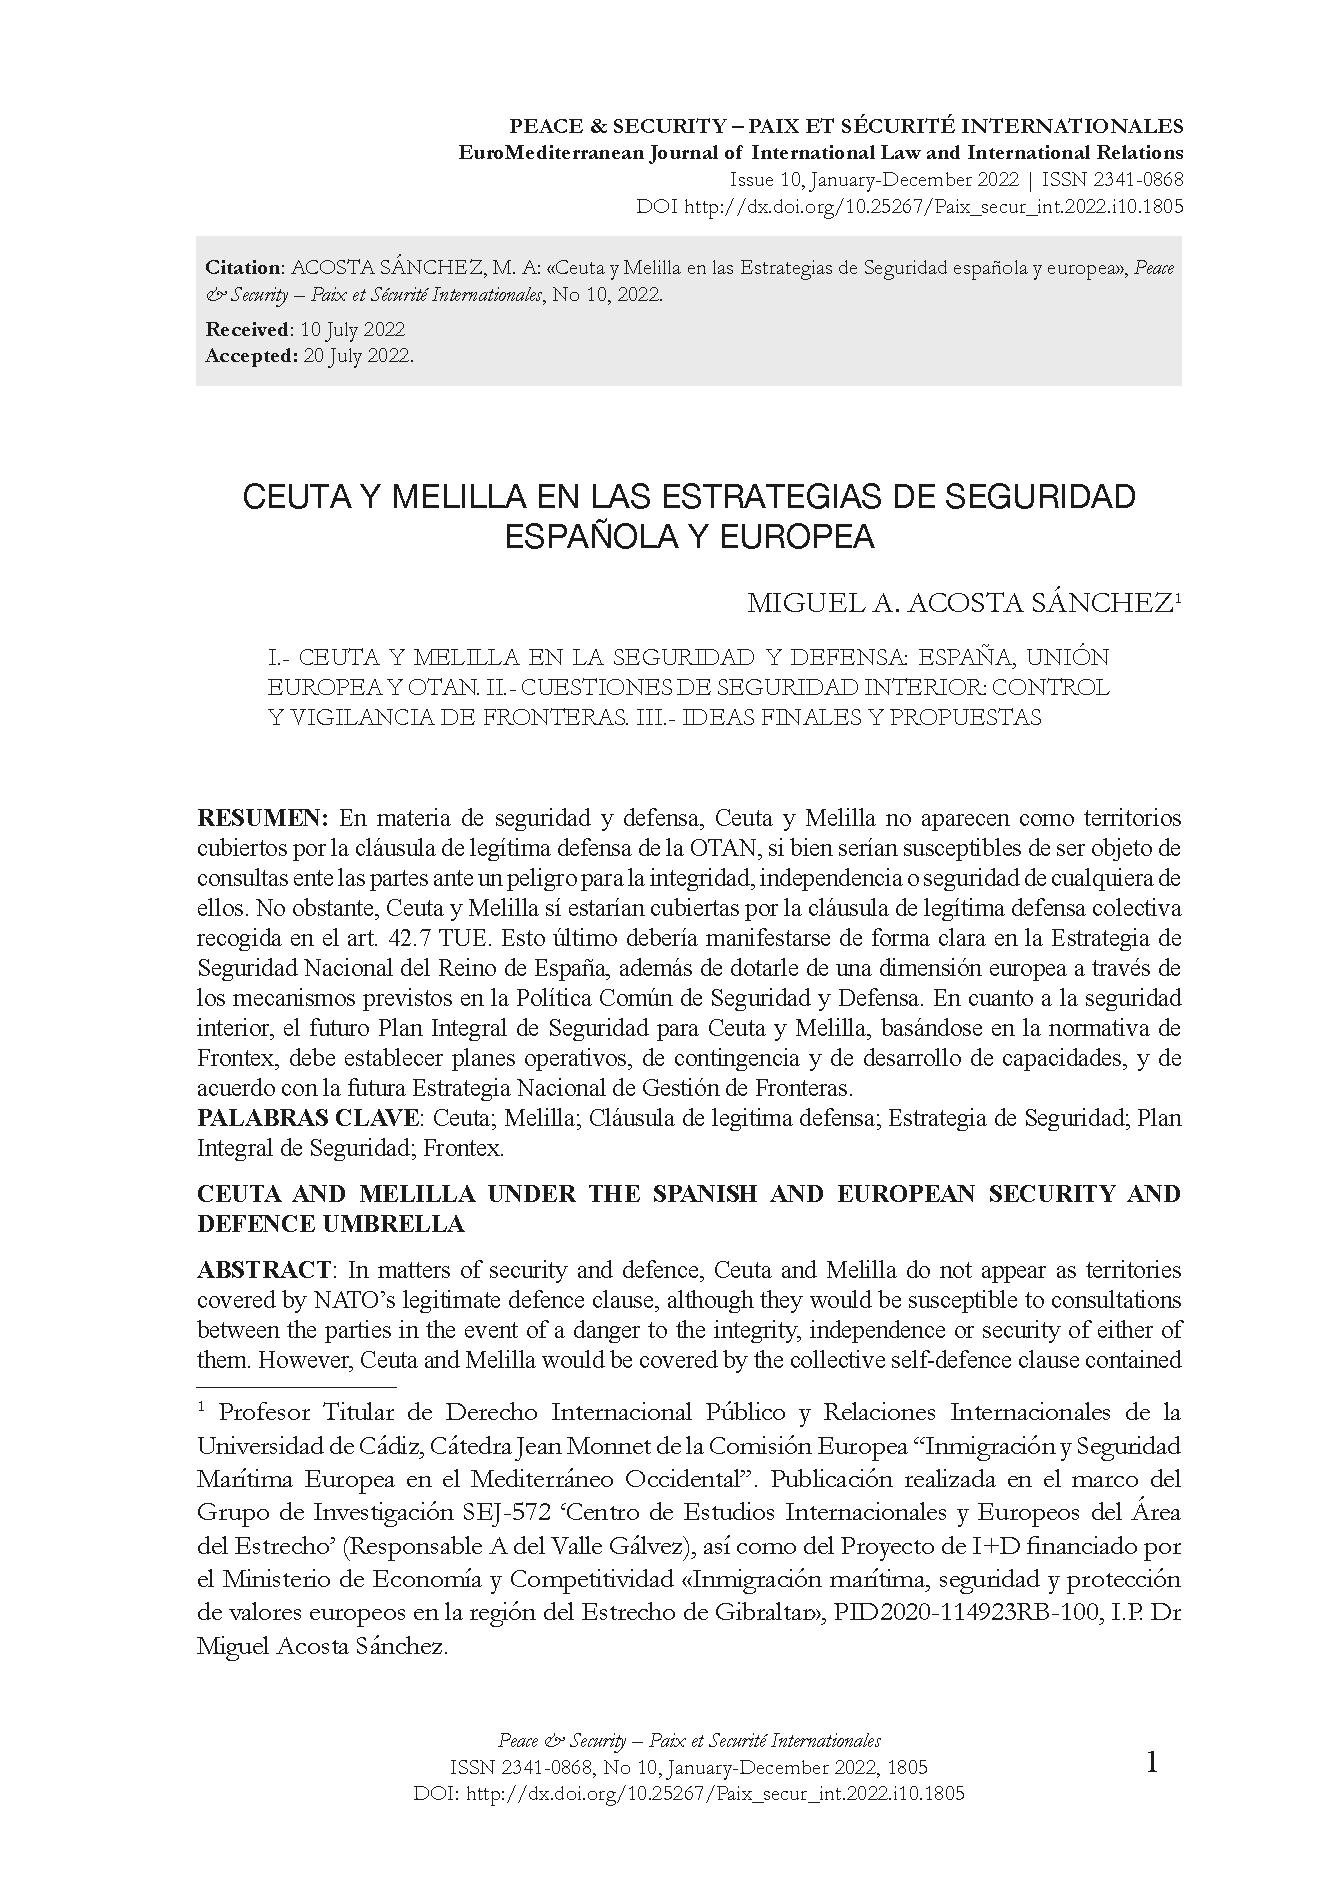 Ceuta y Melilla en las Estrategias de Seguridad española y europea